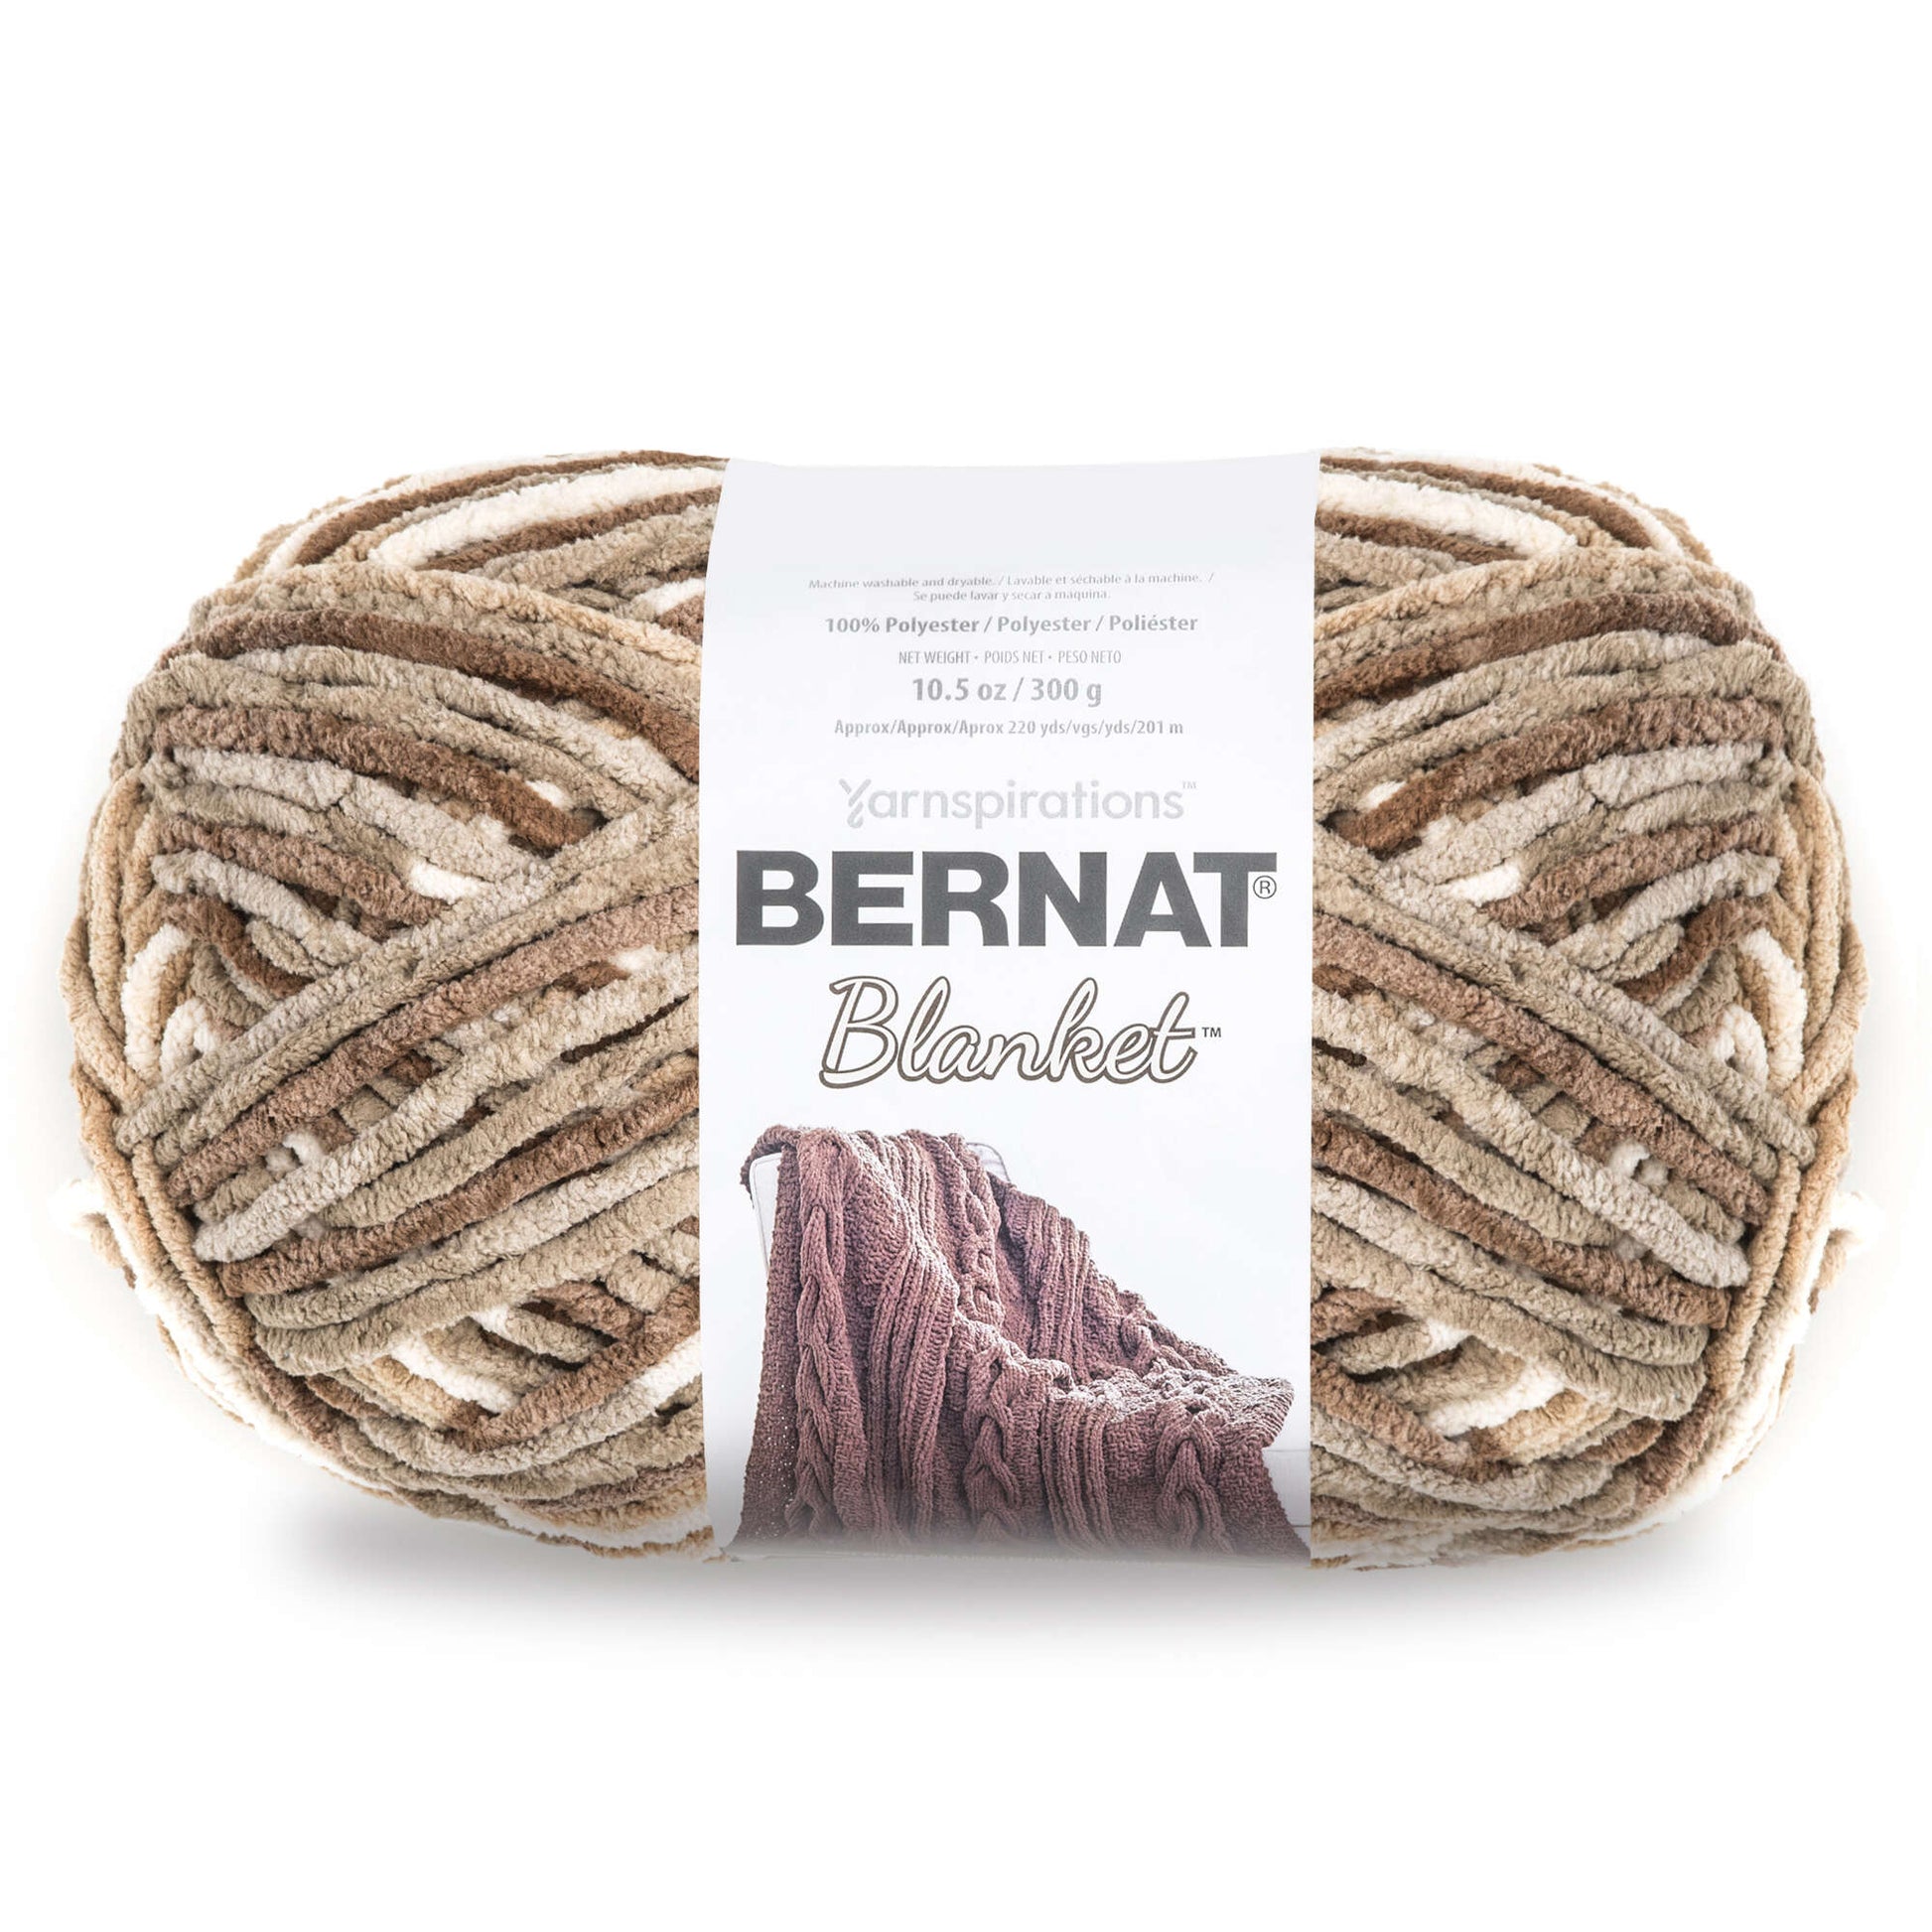 Bernat Blanket Yarn (300g/10.5oz) Sonoma